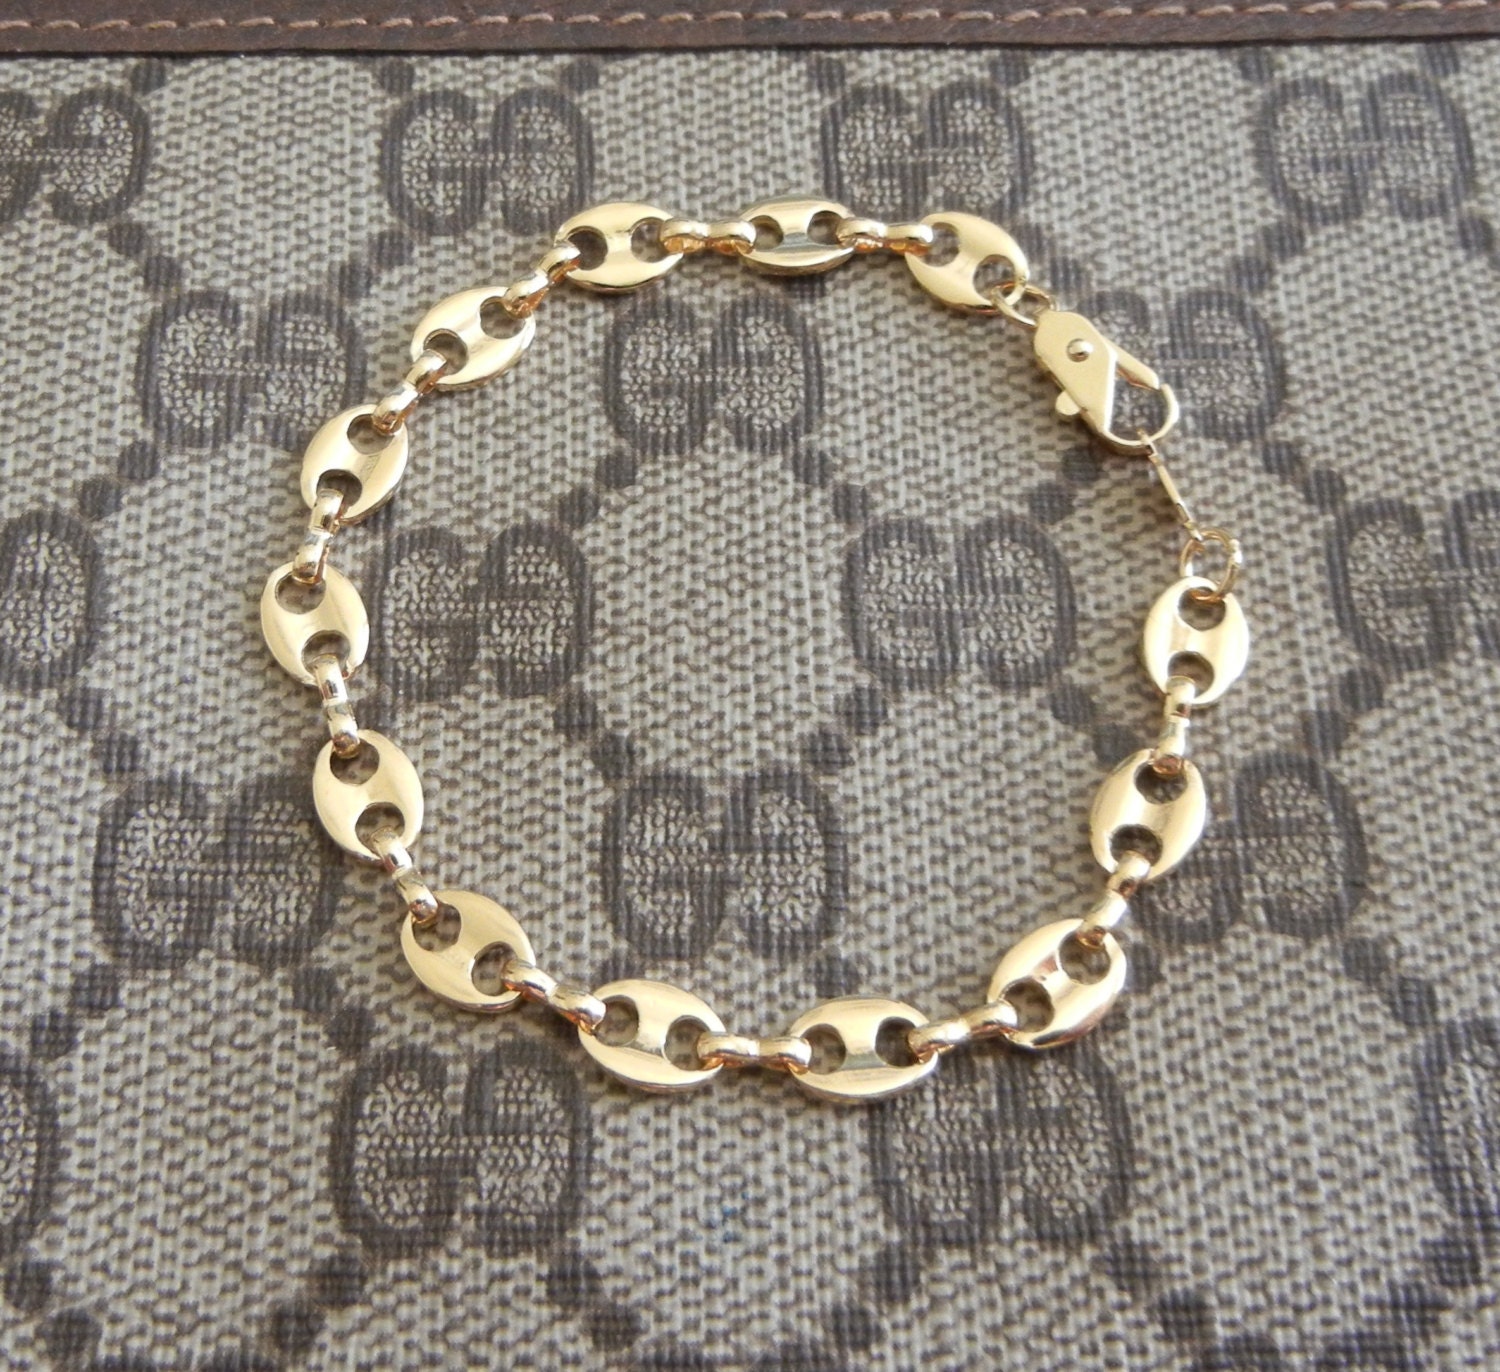 Vintage gold plated Gucci style link bracelet signed DM